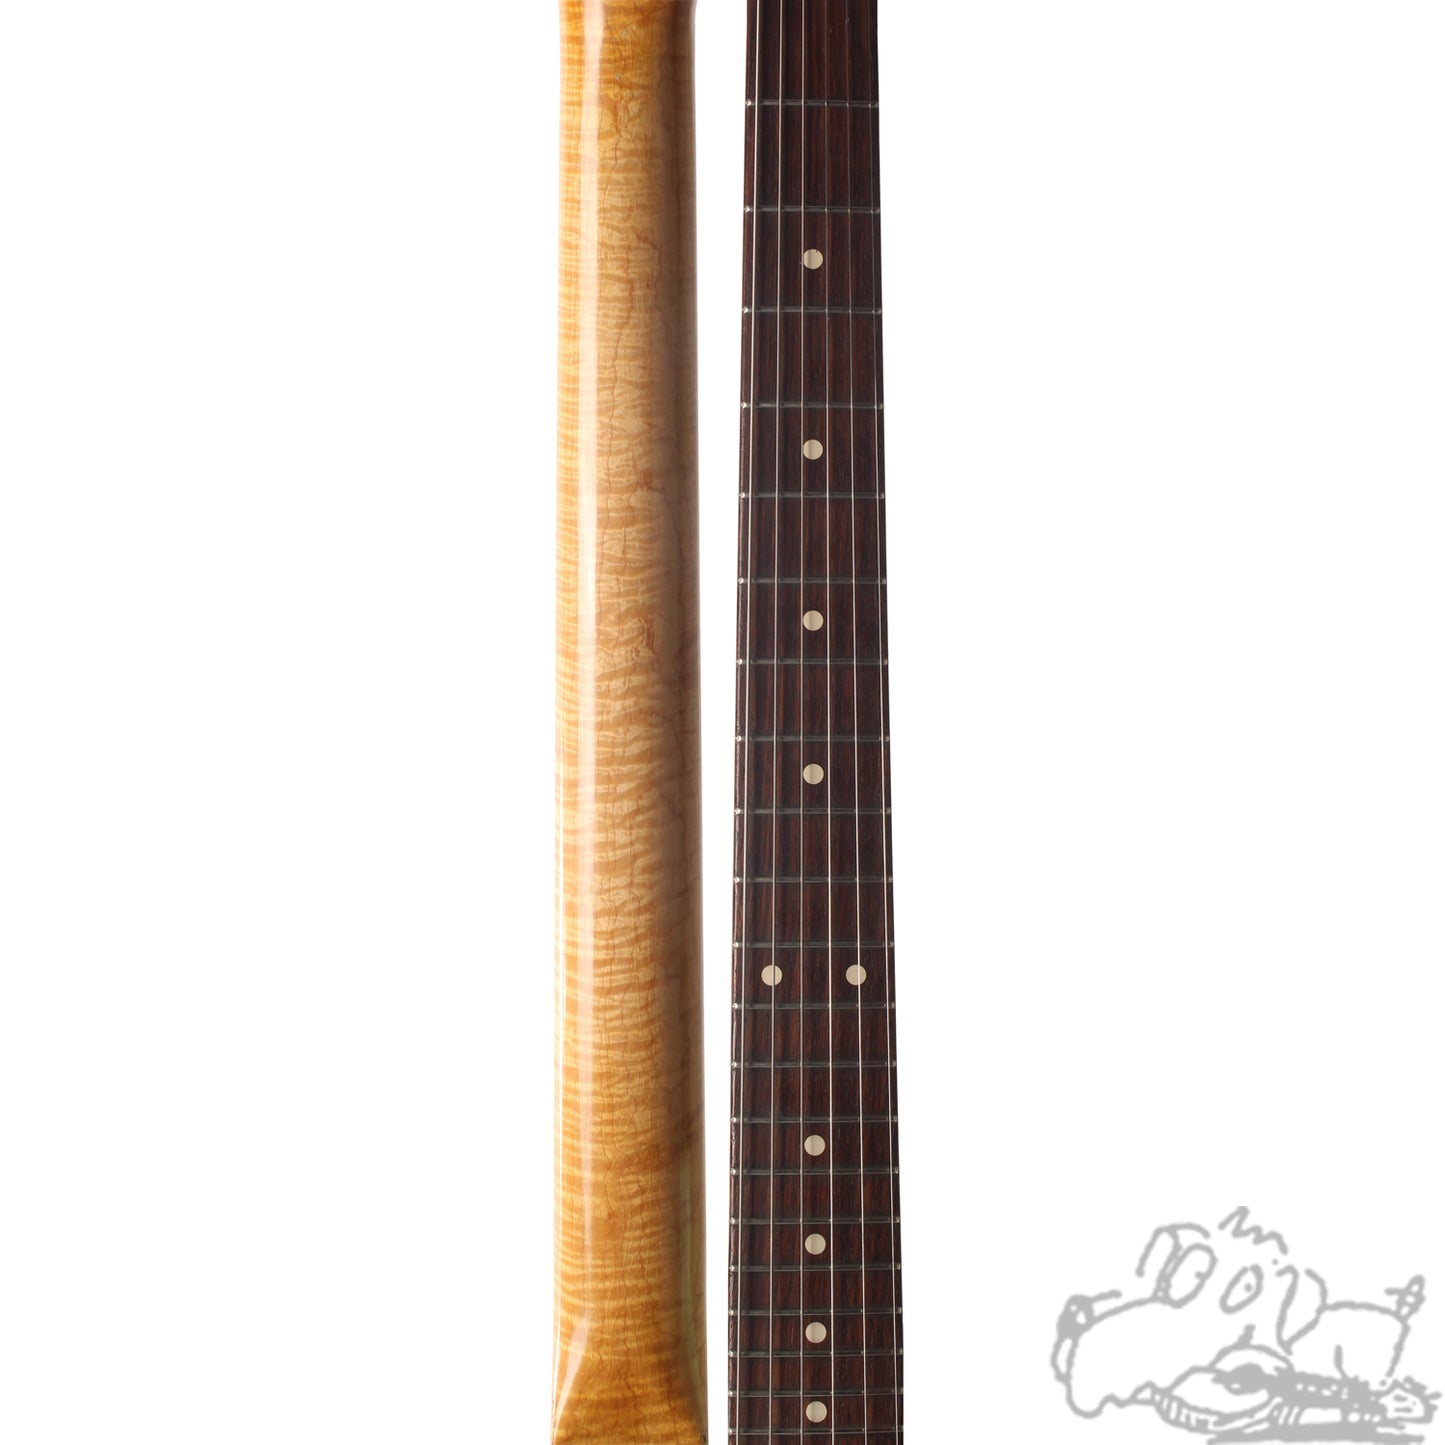 2007 FMIC Custom Shop Yuri '61 Relic Stratocaster Masterbuilt by Yuri Shiskov